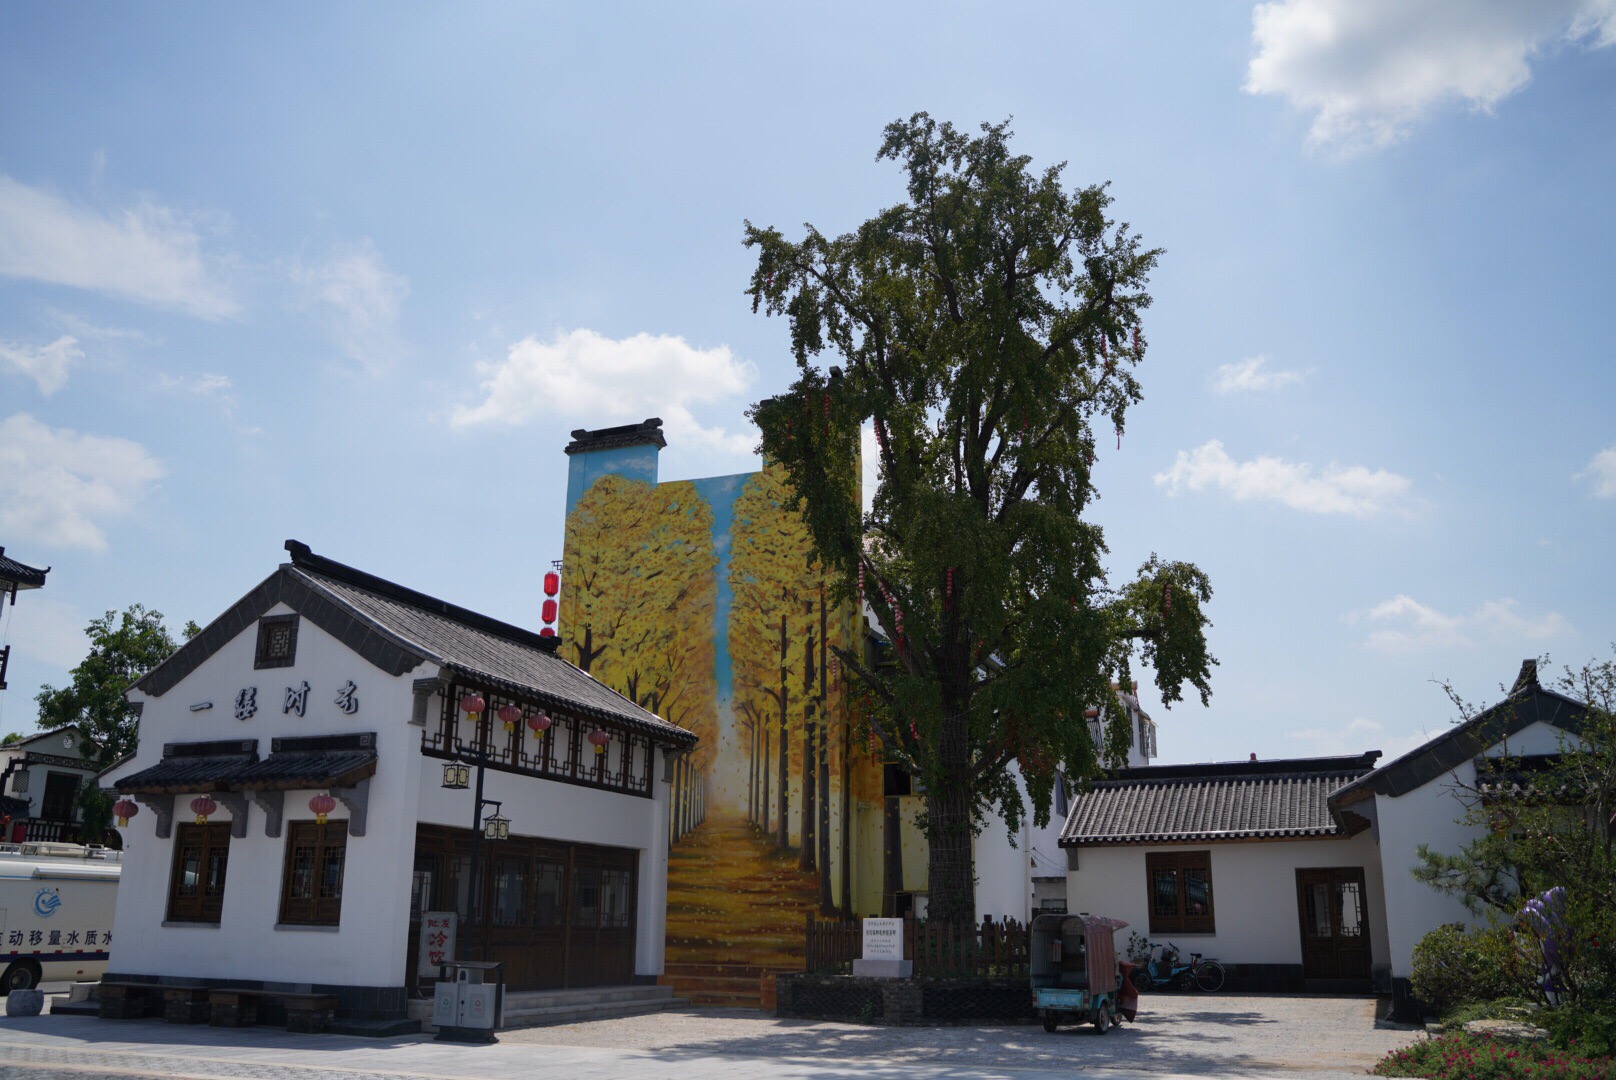 烟波浩渺的洪泽湖畔,有一座名叫蒋坝镇的千年古镇,它自古以来就是繁华